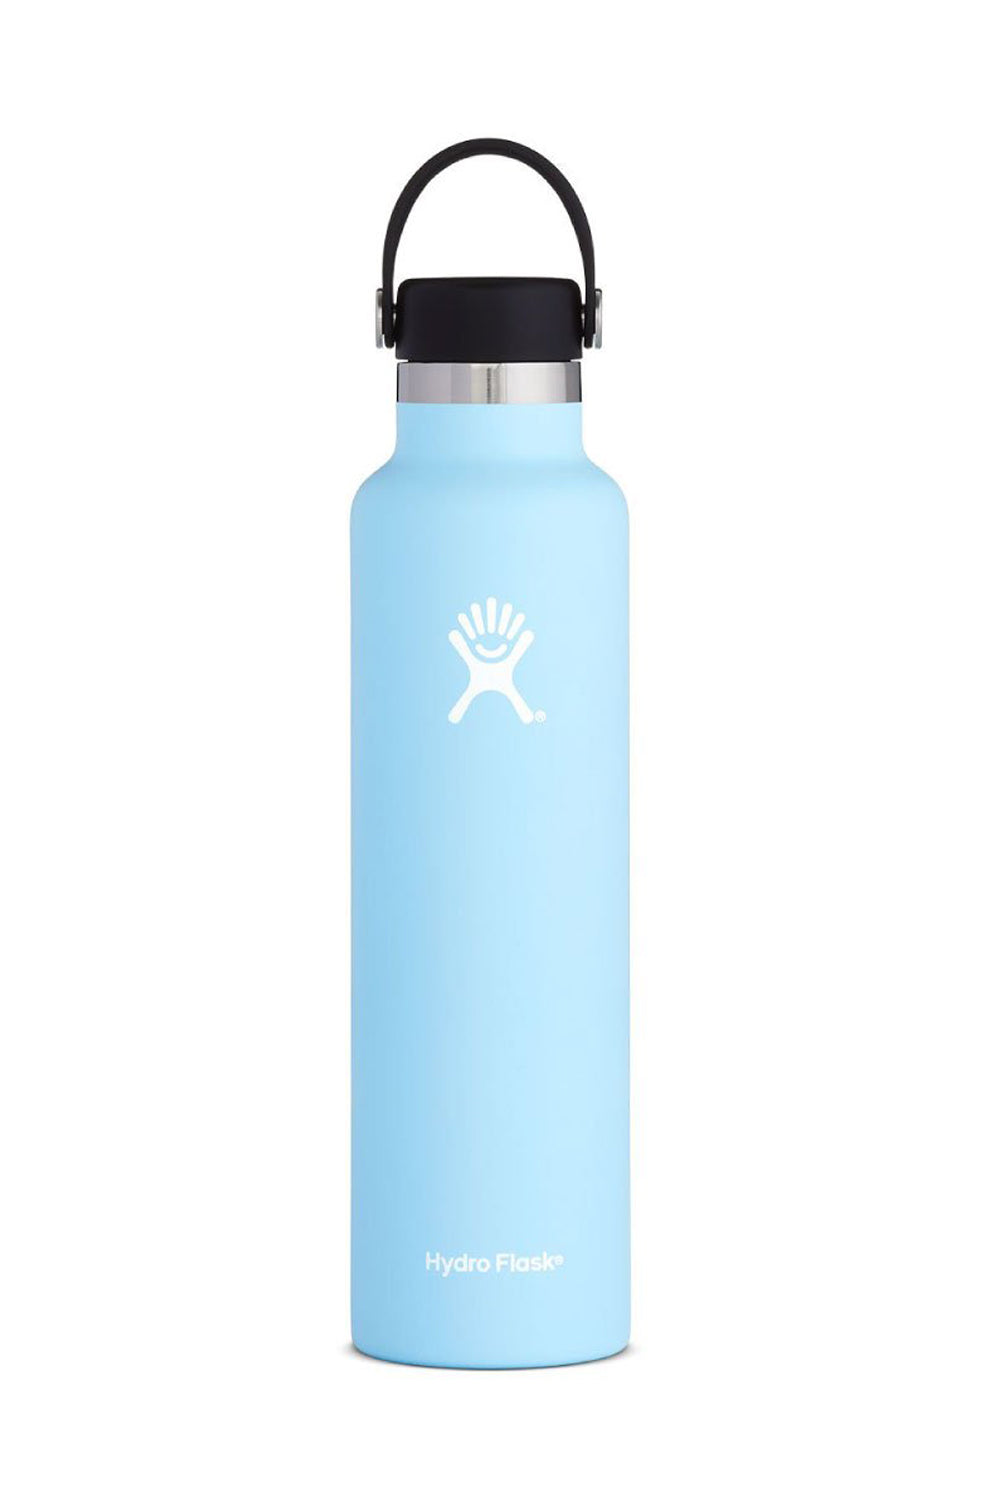 Hydro Flask 24oz (710 ml) Standard Drink Bottle